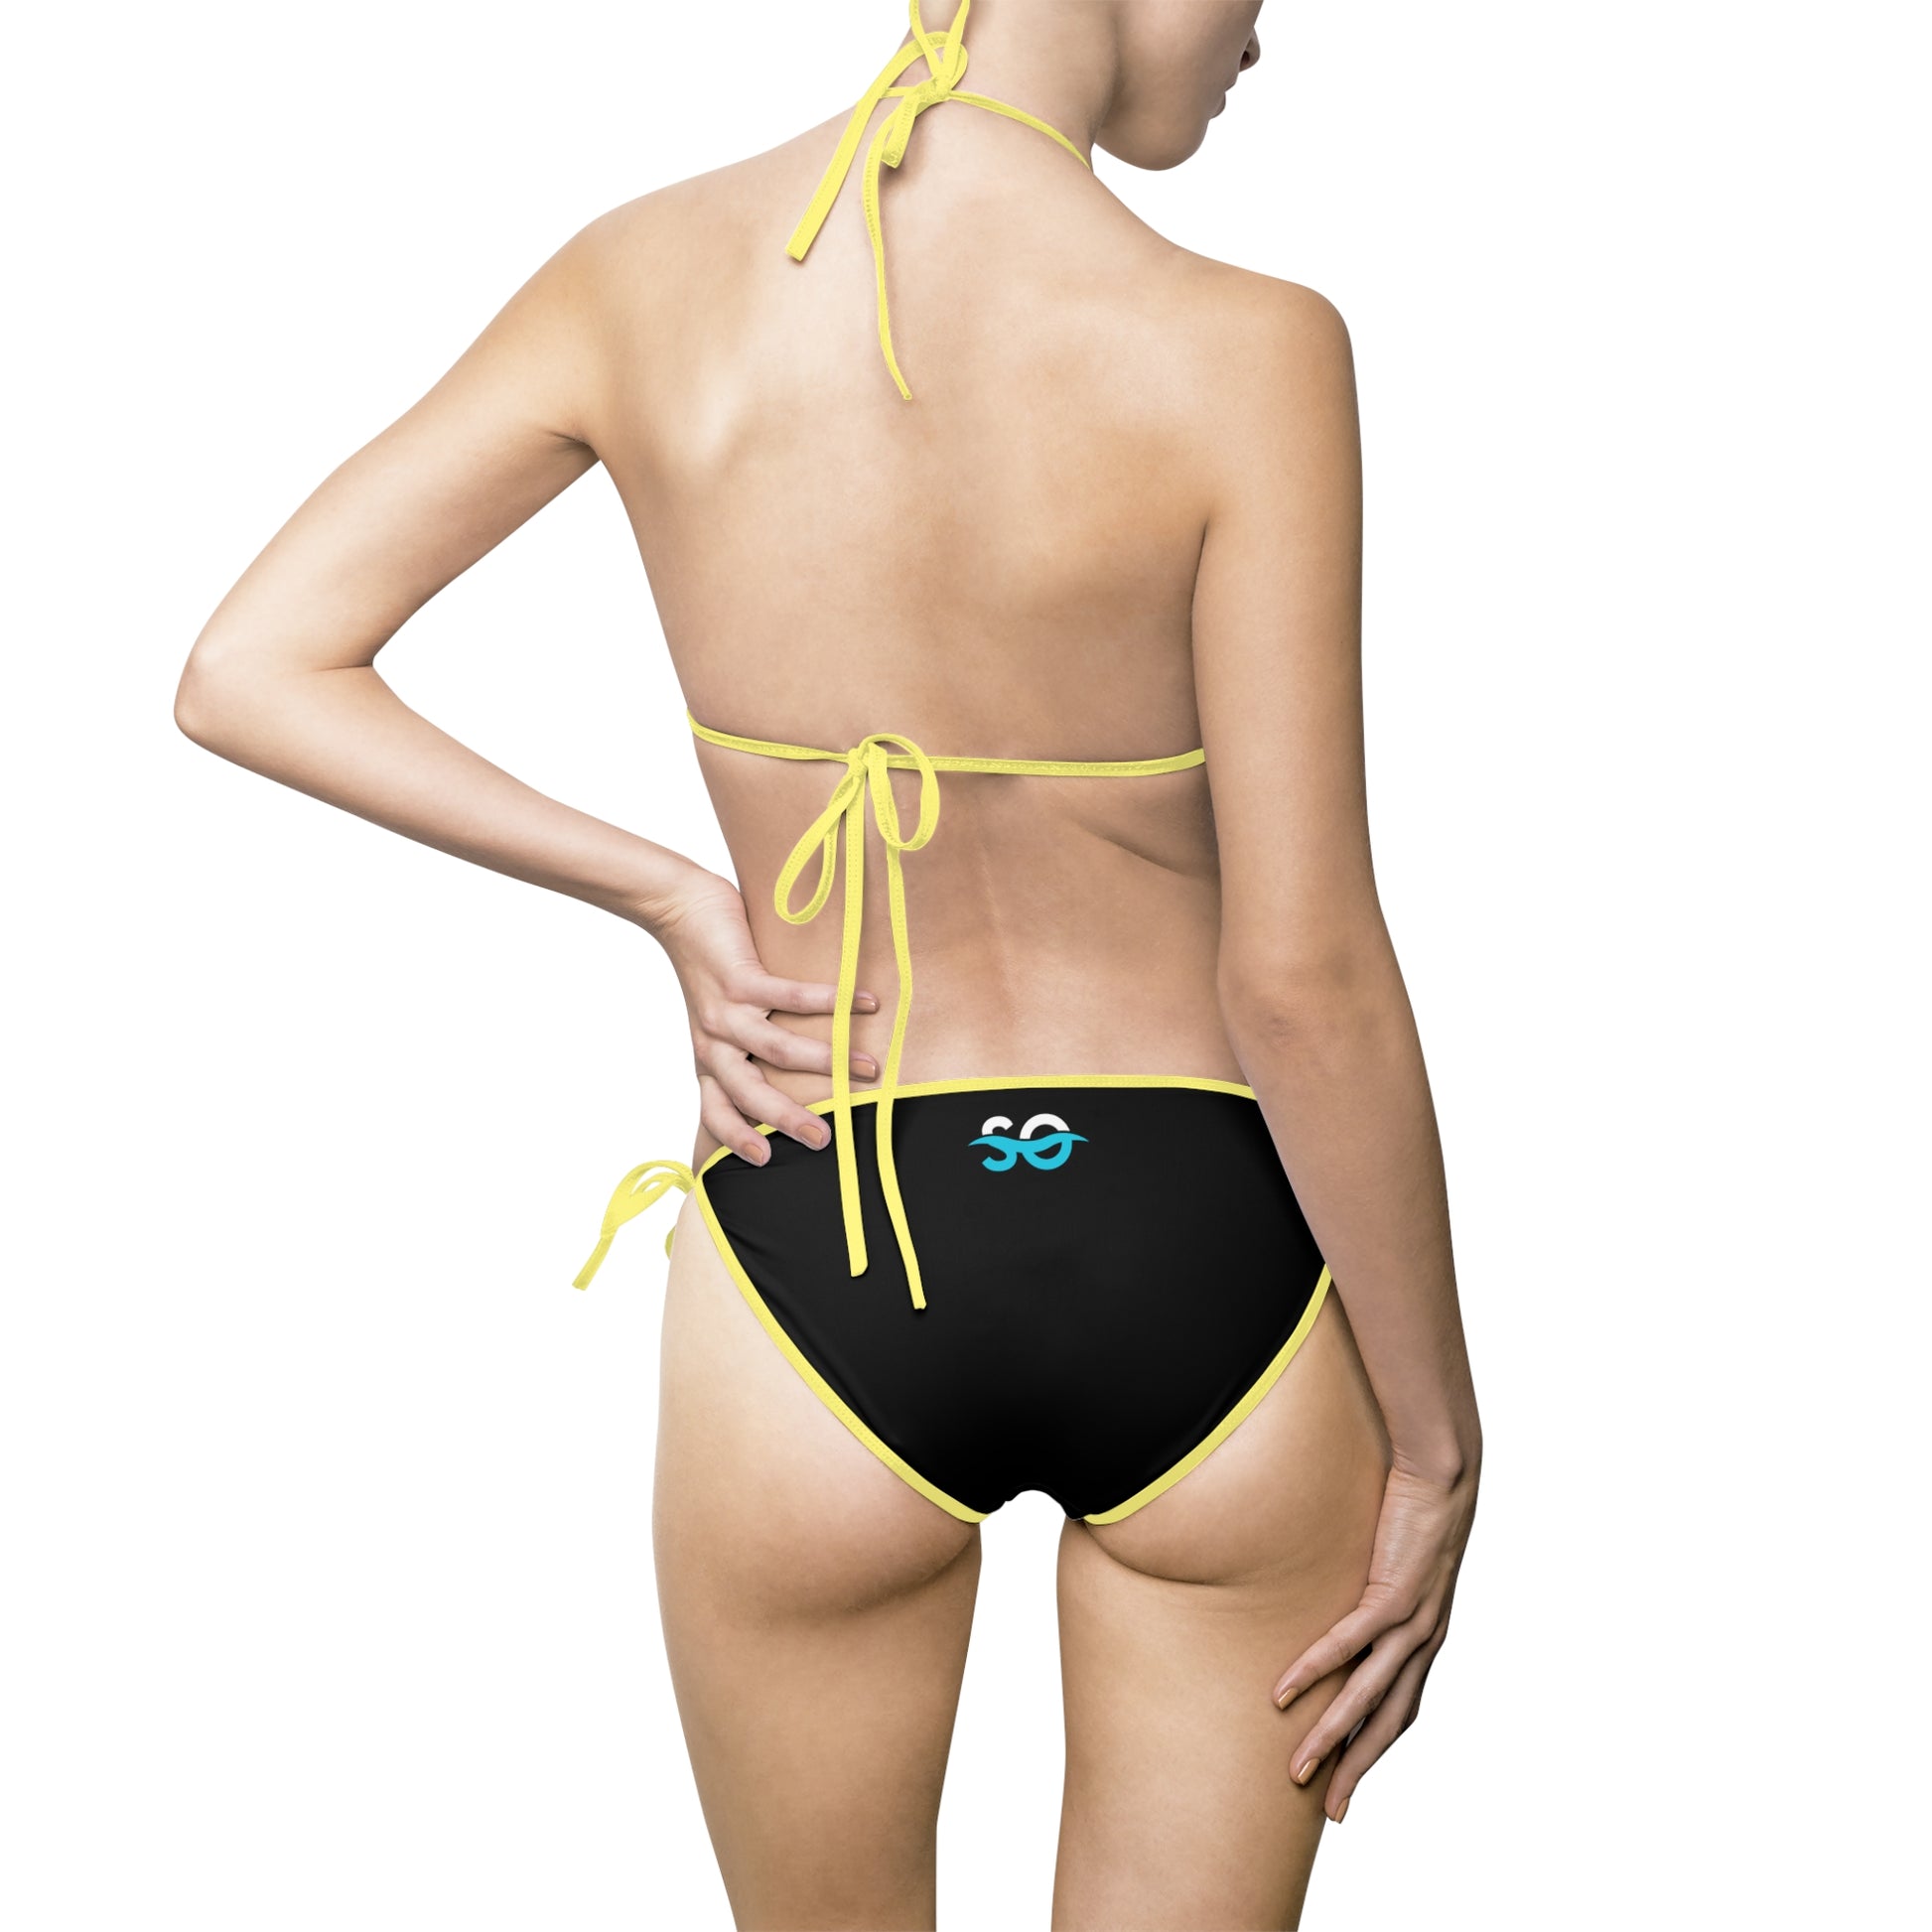 a woman in a black and yellow bikini bottom